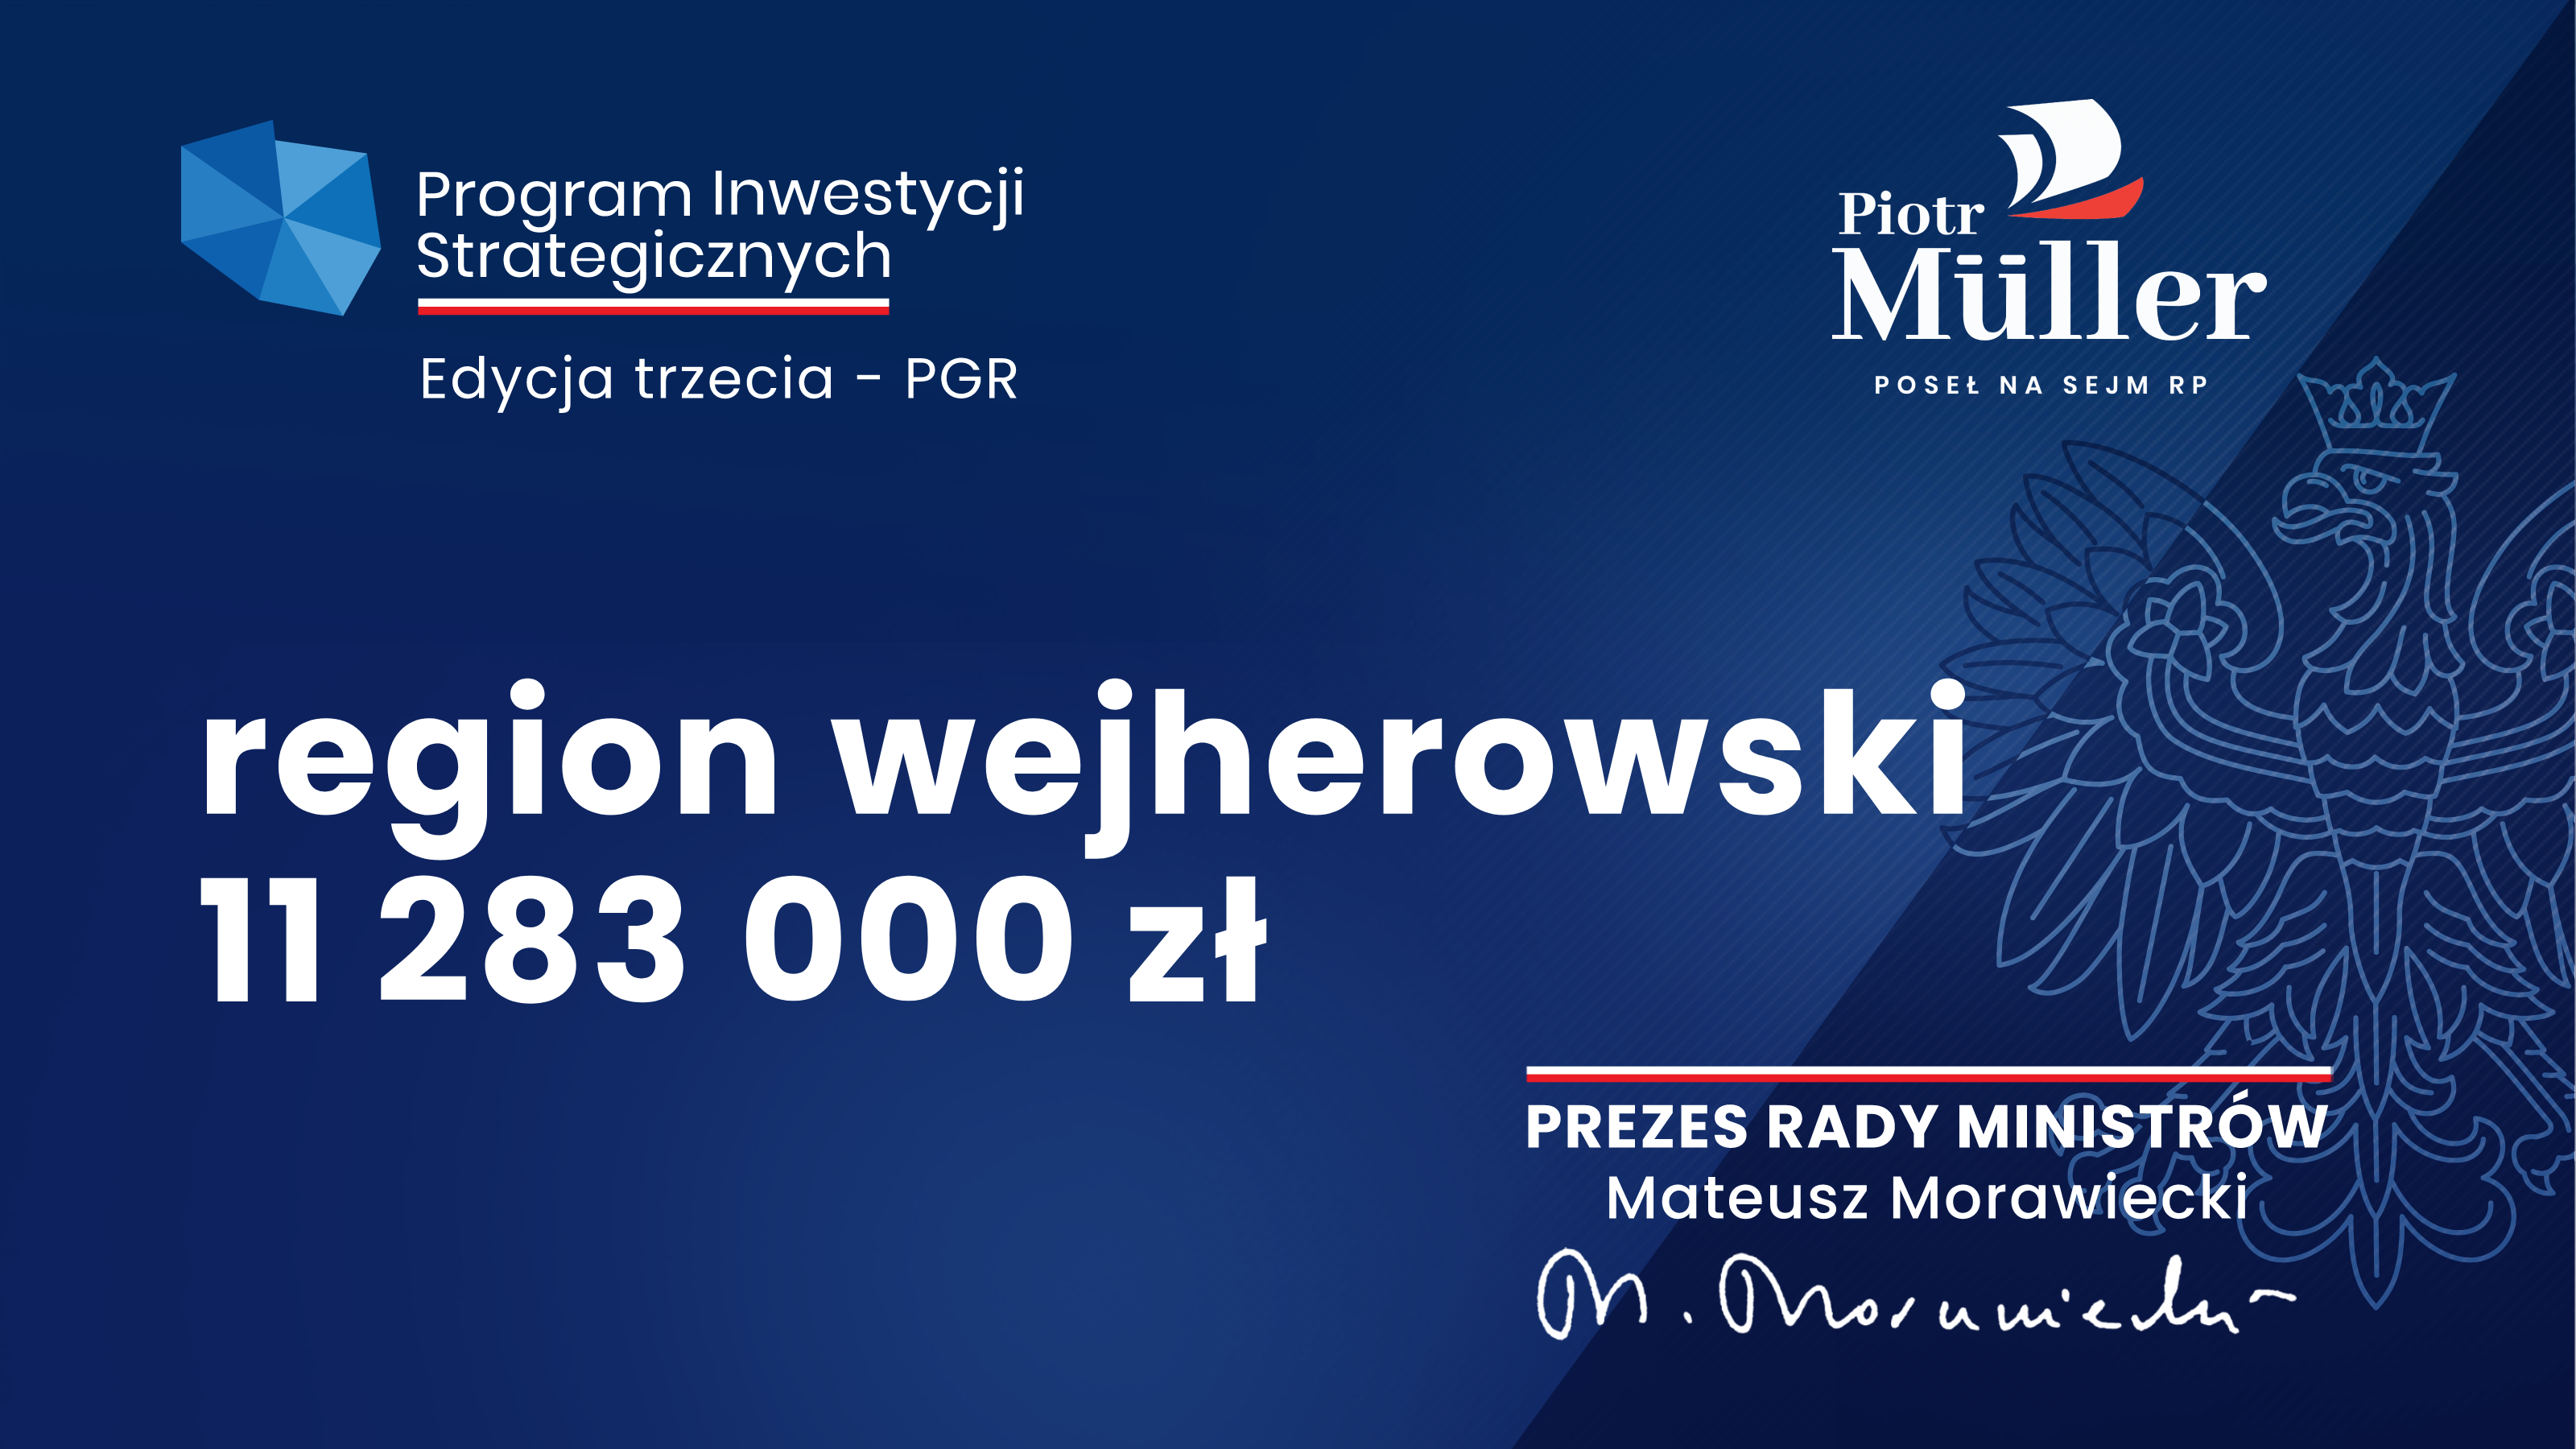 W ramach 3. edycji Rządowego Programu Inwestycji Strategicznych region wejherowski otrzymał 11 283 000 zł w ramach wsparcia dla regionów, w których funkcjonowały tzw. PGR-y. To kolejne rządowe wsparcie na rozwój naszego regionu